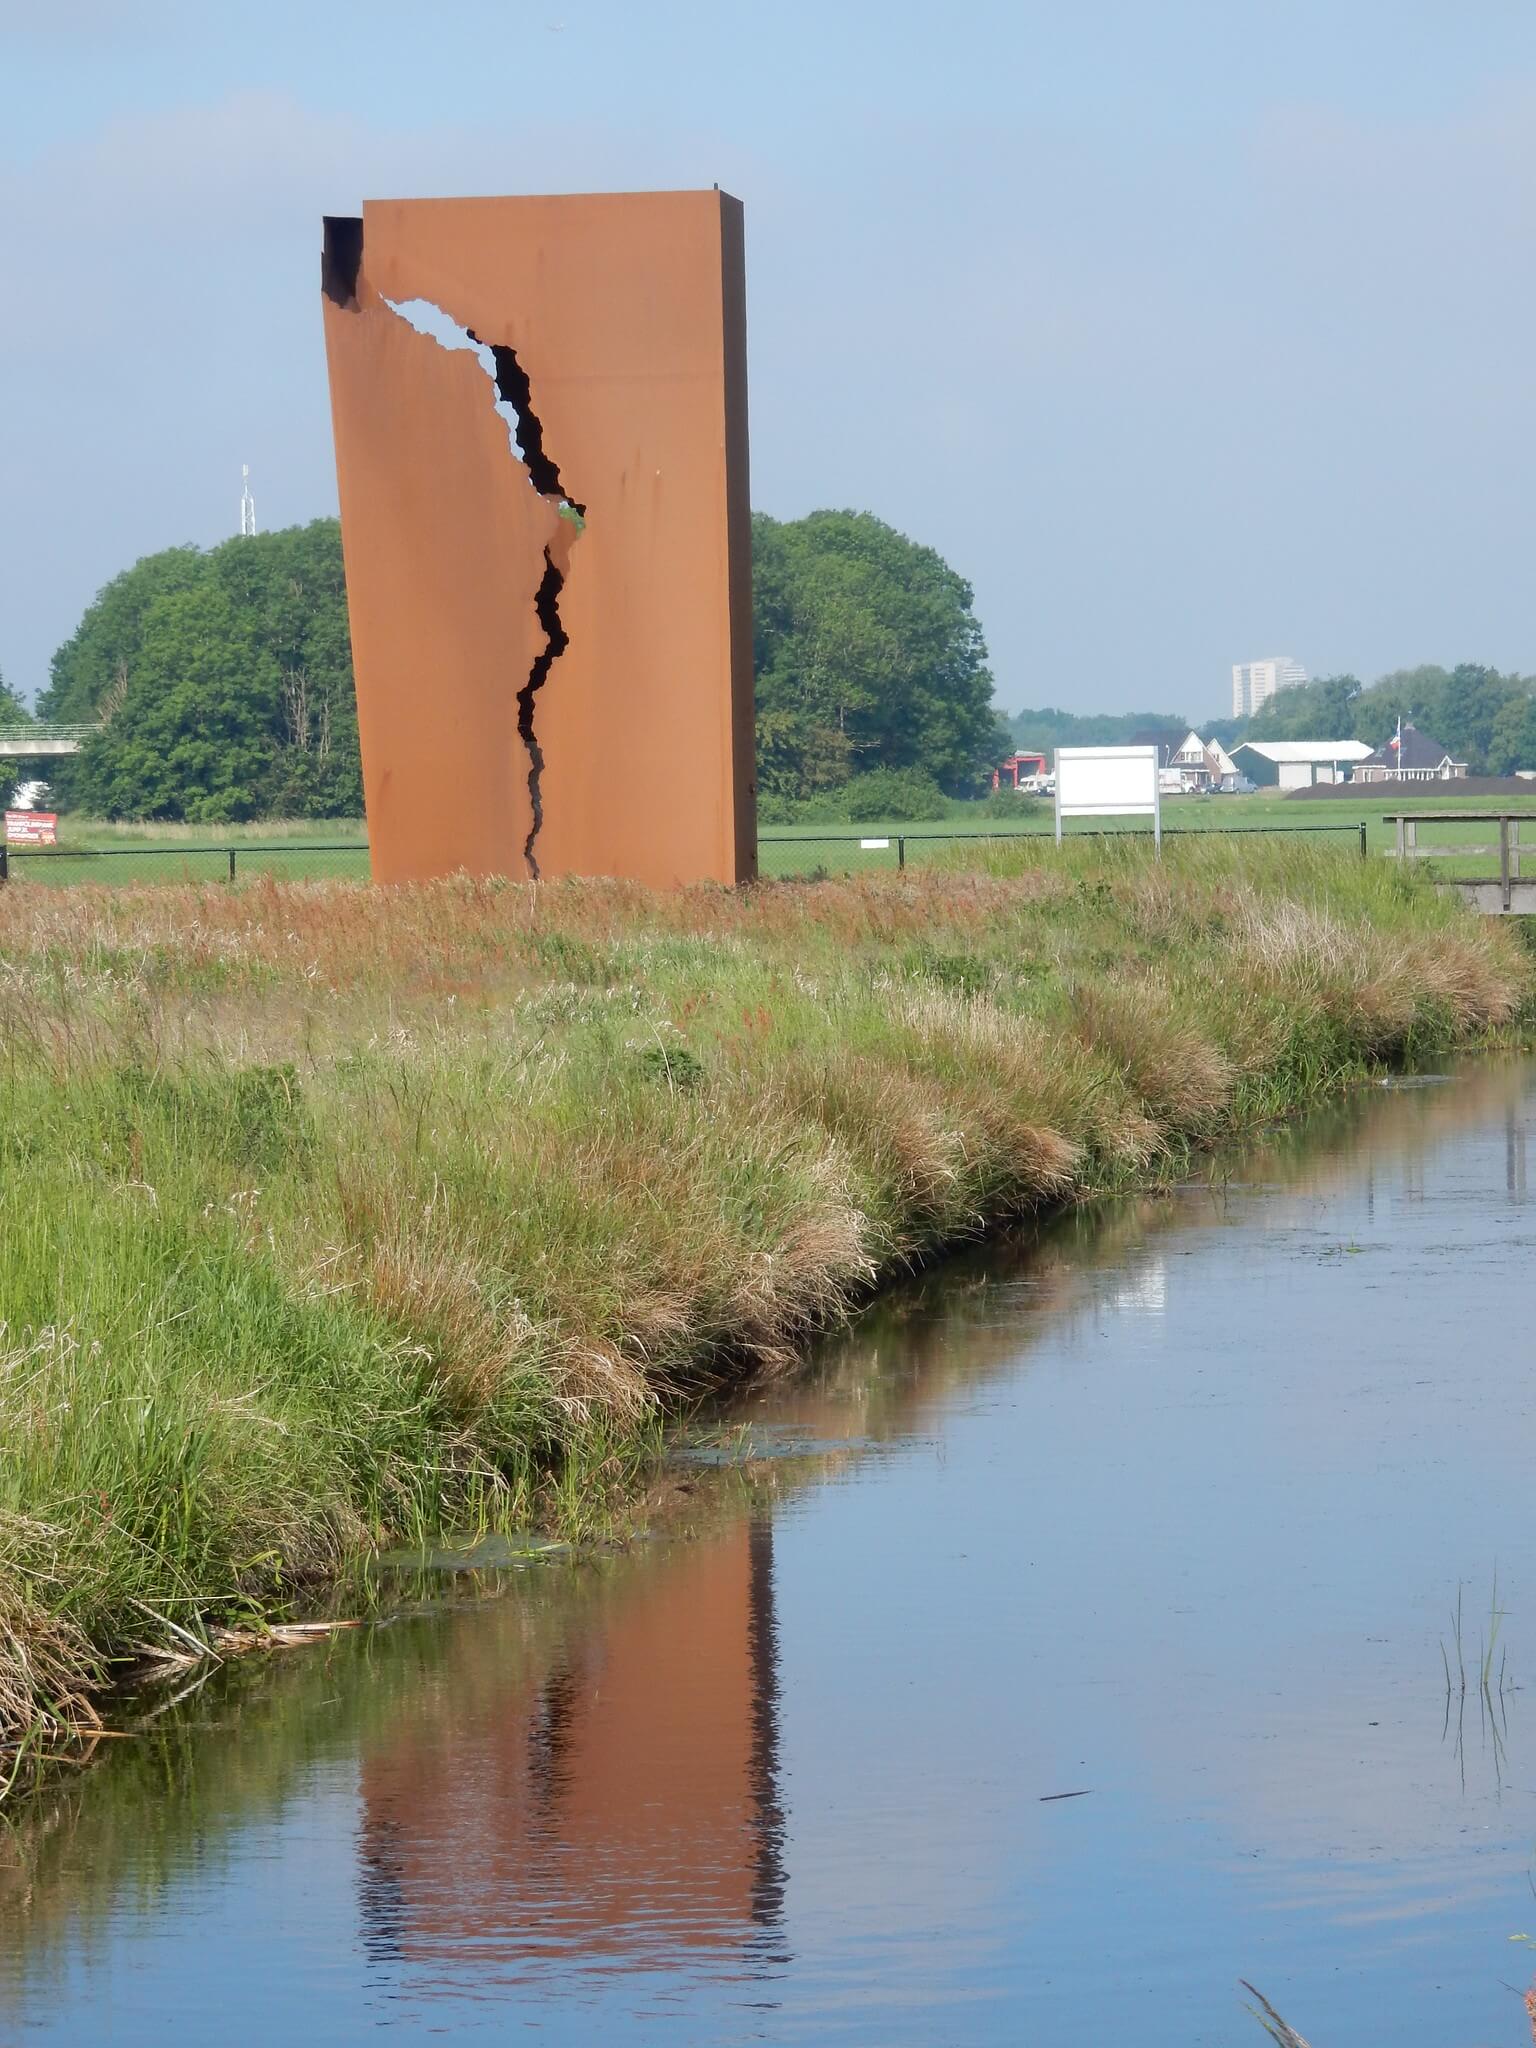 Stoetman - Kunstwerk Het Andere Monument van Karel Buskes. Het monument moet aandacht vestigen op de aardbevingen in Groningen als gevolg van de gaswinning. Sicco2007 - Flickr 